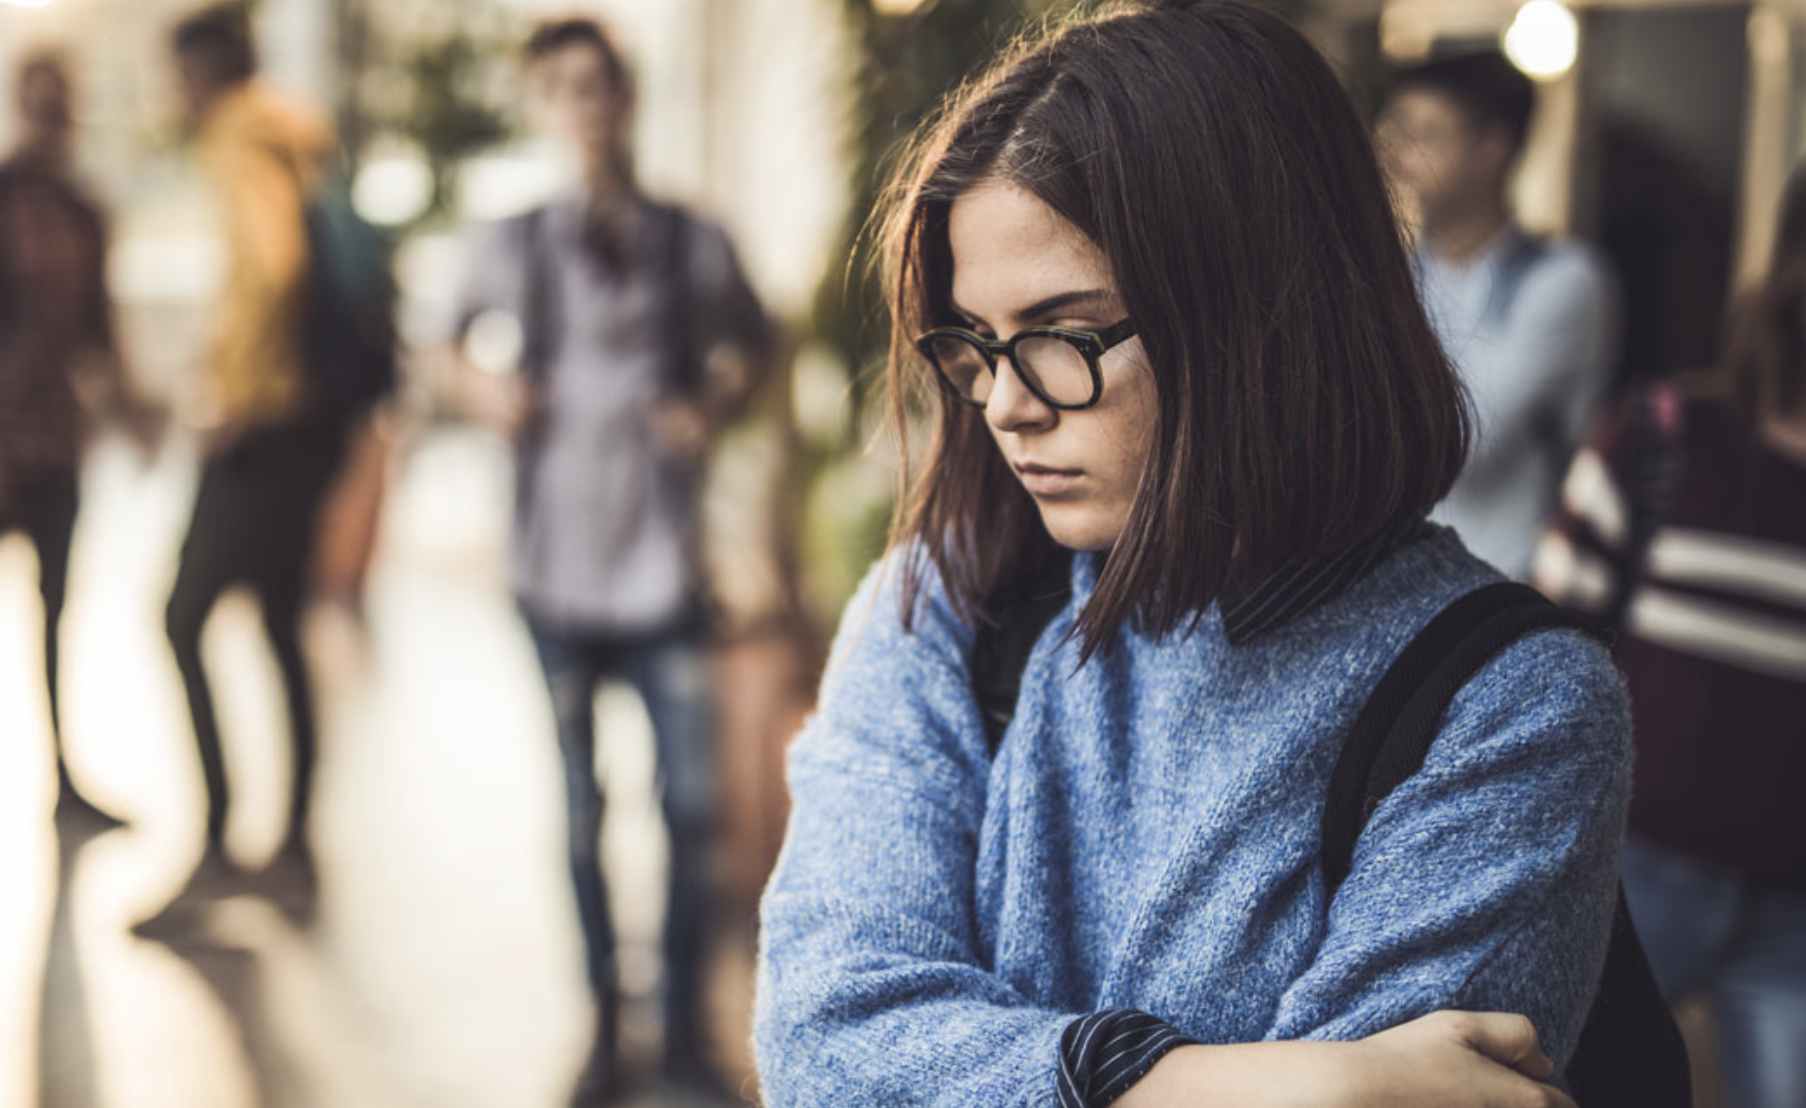 depressed teen girl in school hallway